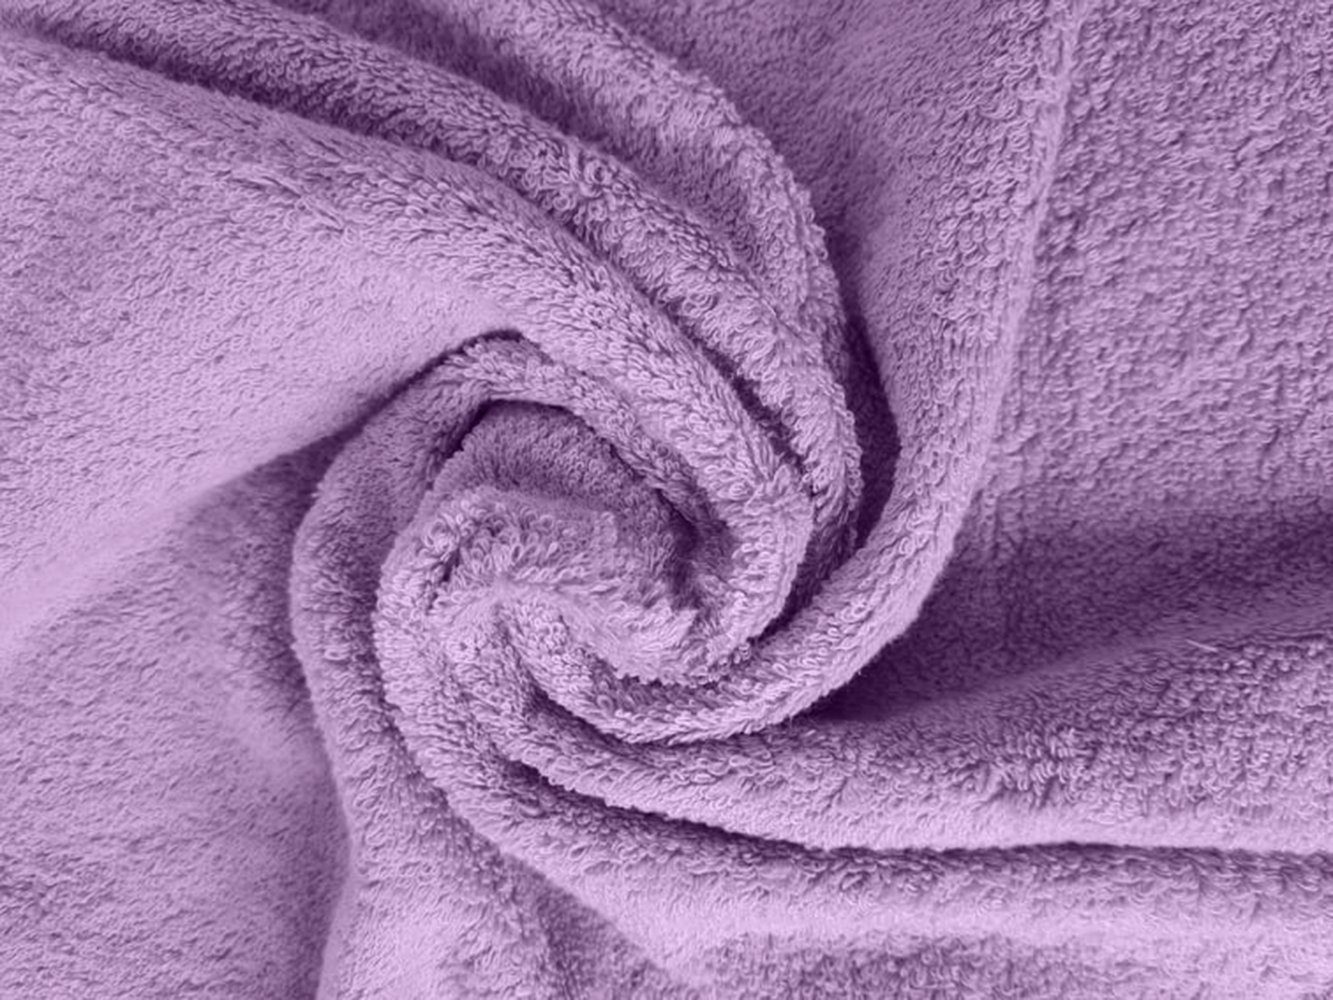 Sitheim-Europe Handtuch Set KING TUT Baumwolle premium 100% 4-teiliges 100% ägyptischer Handtücher ägyptische Handtuchset, ägyptischer (Spar-Set, Baumwolle langlebig, Lavendel 4-tlg), kuschelweich, Edel, Baumwolle